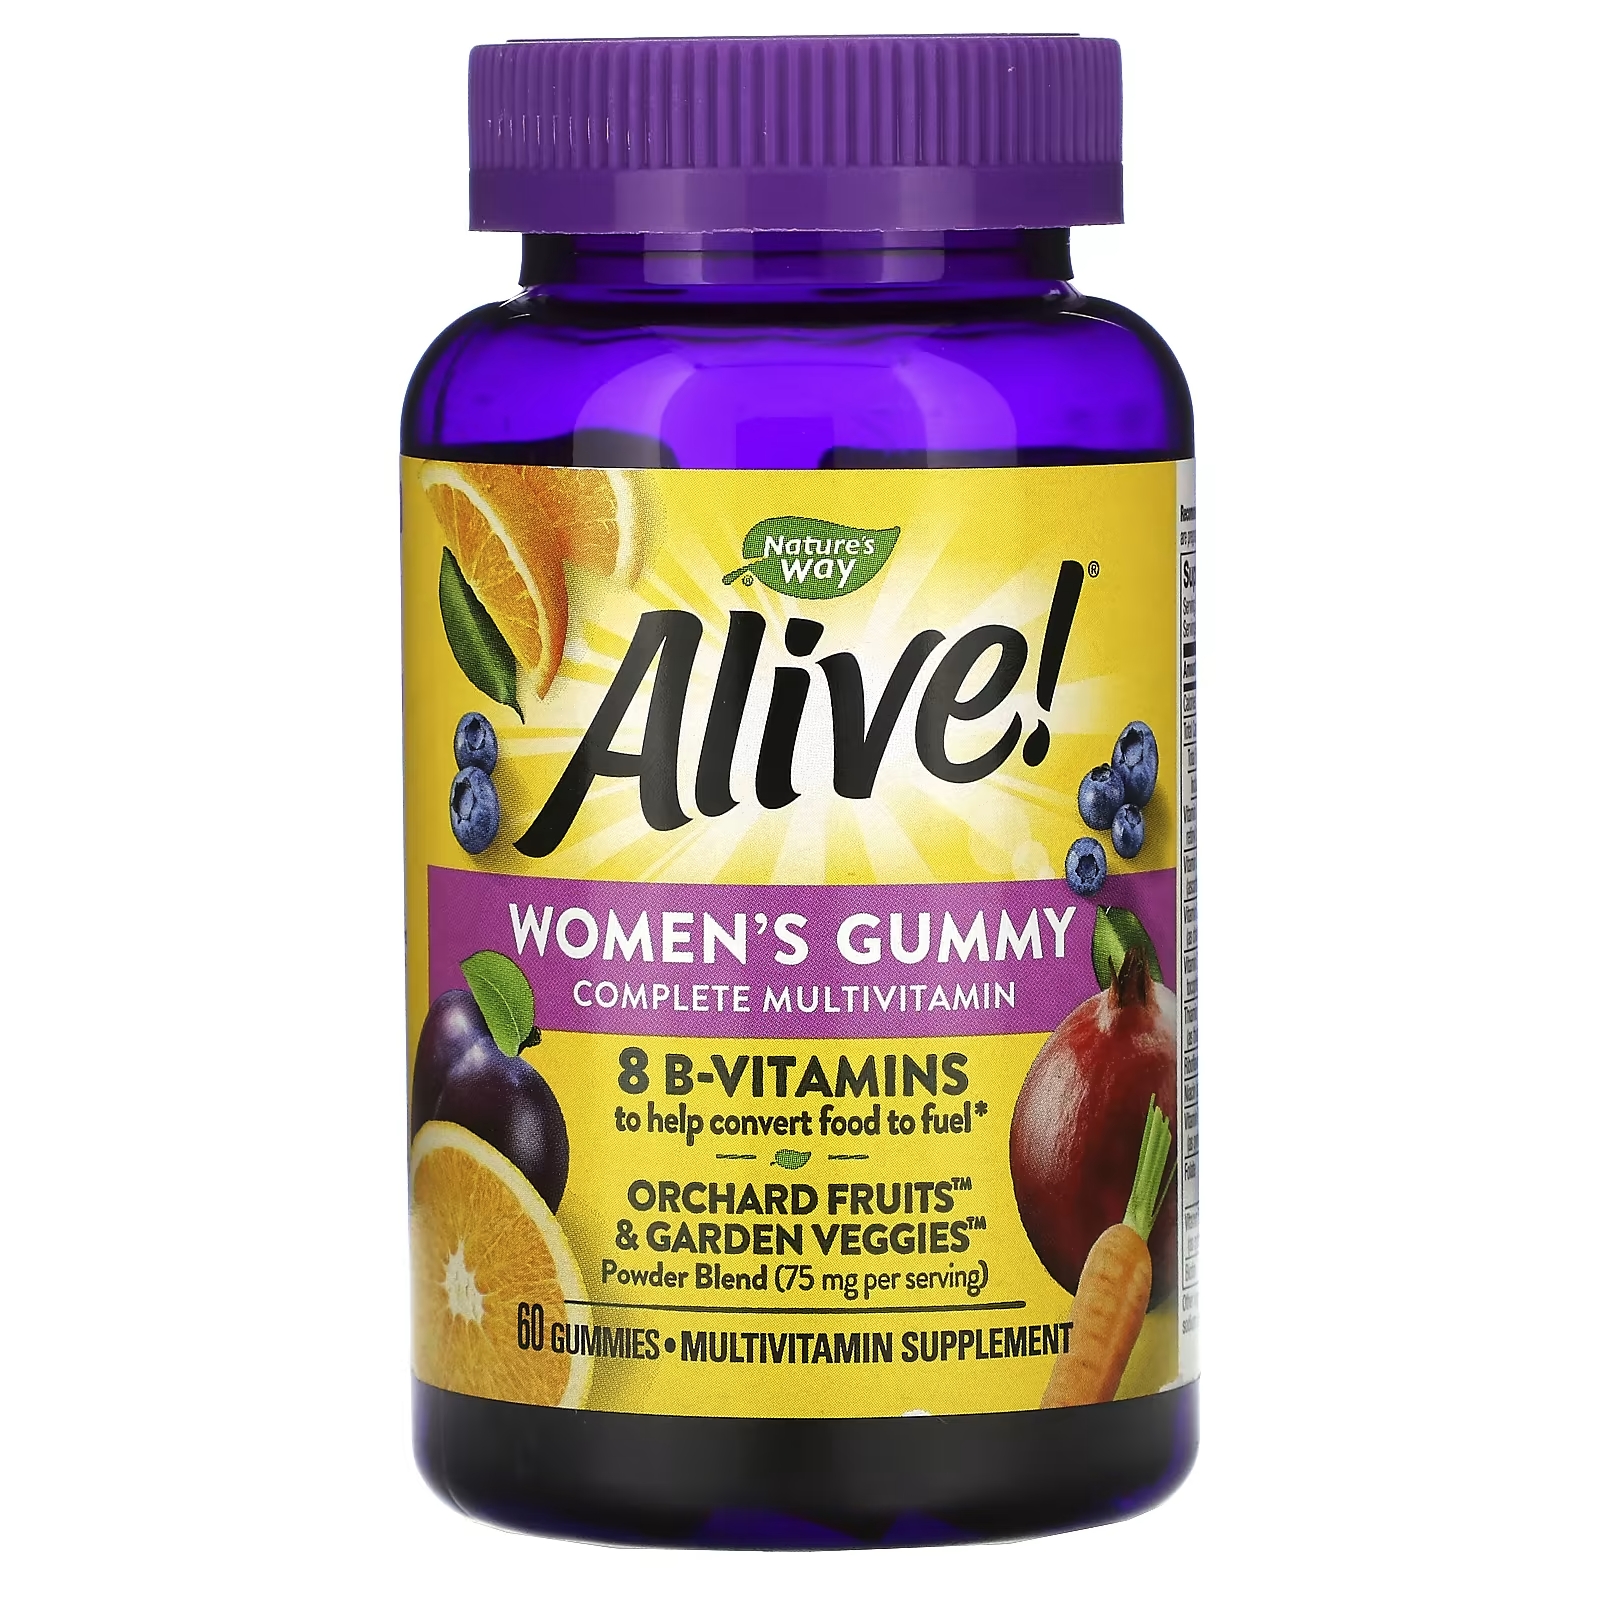 Мультивитаминный Комплекс для Женщин Nature's Way Alive, ягодный вкус, 60 жевательных таблеток nature s way alive once daily полный комплекс высокоэффективных мультивитаминов для женщин 60 таблеток